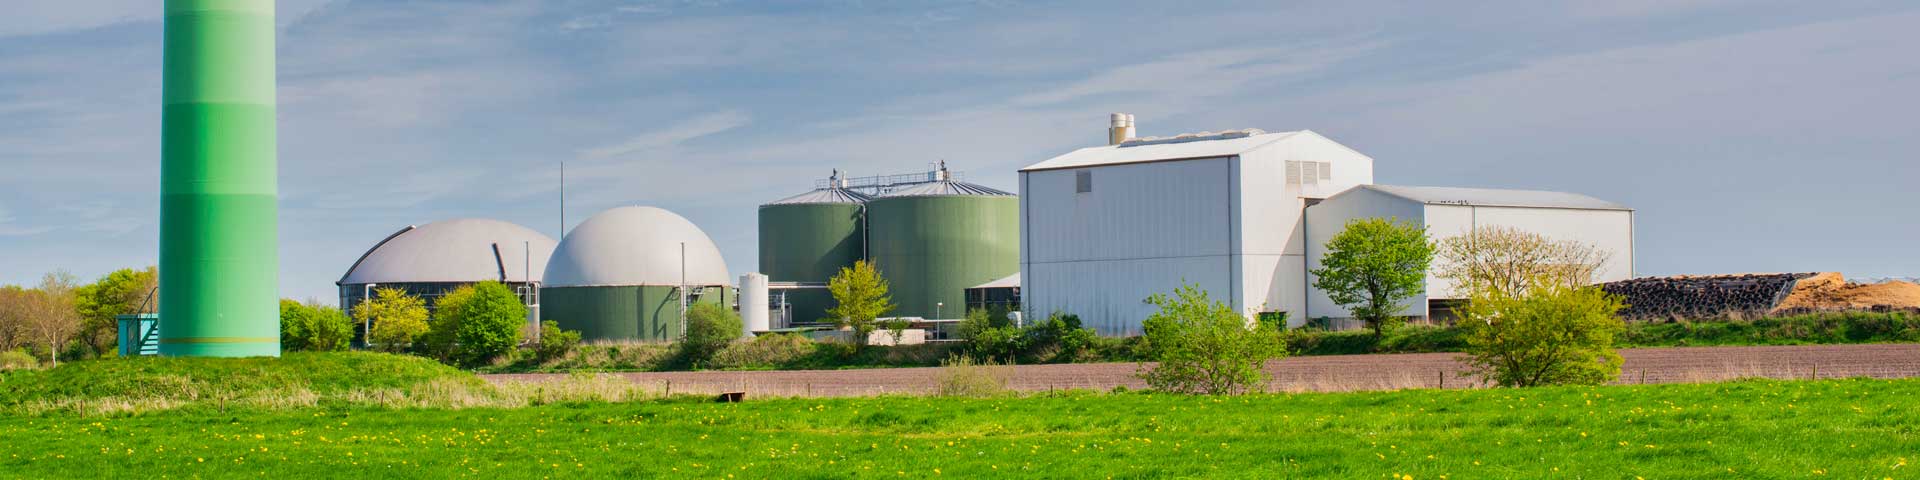 biomassacentrale Diemen